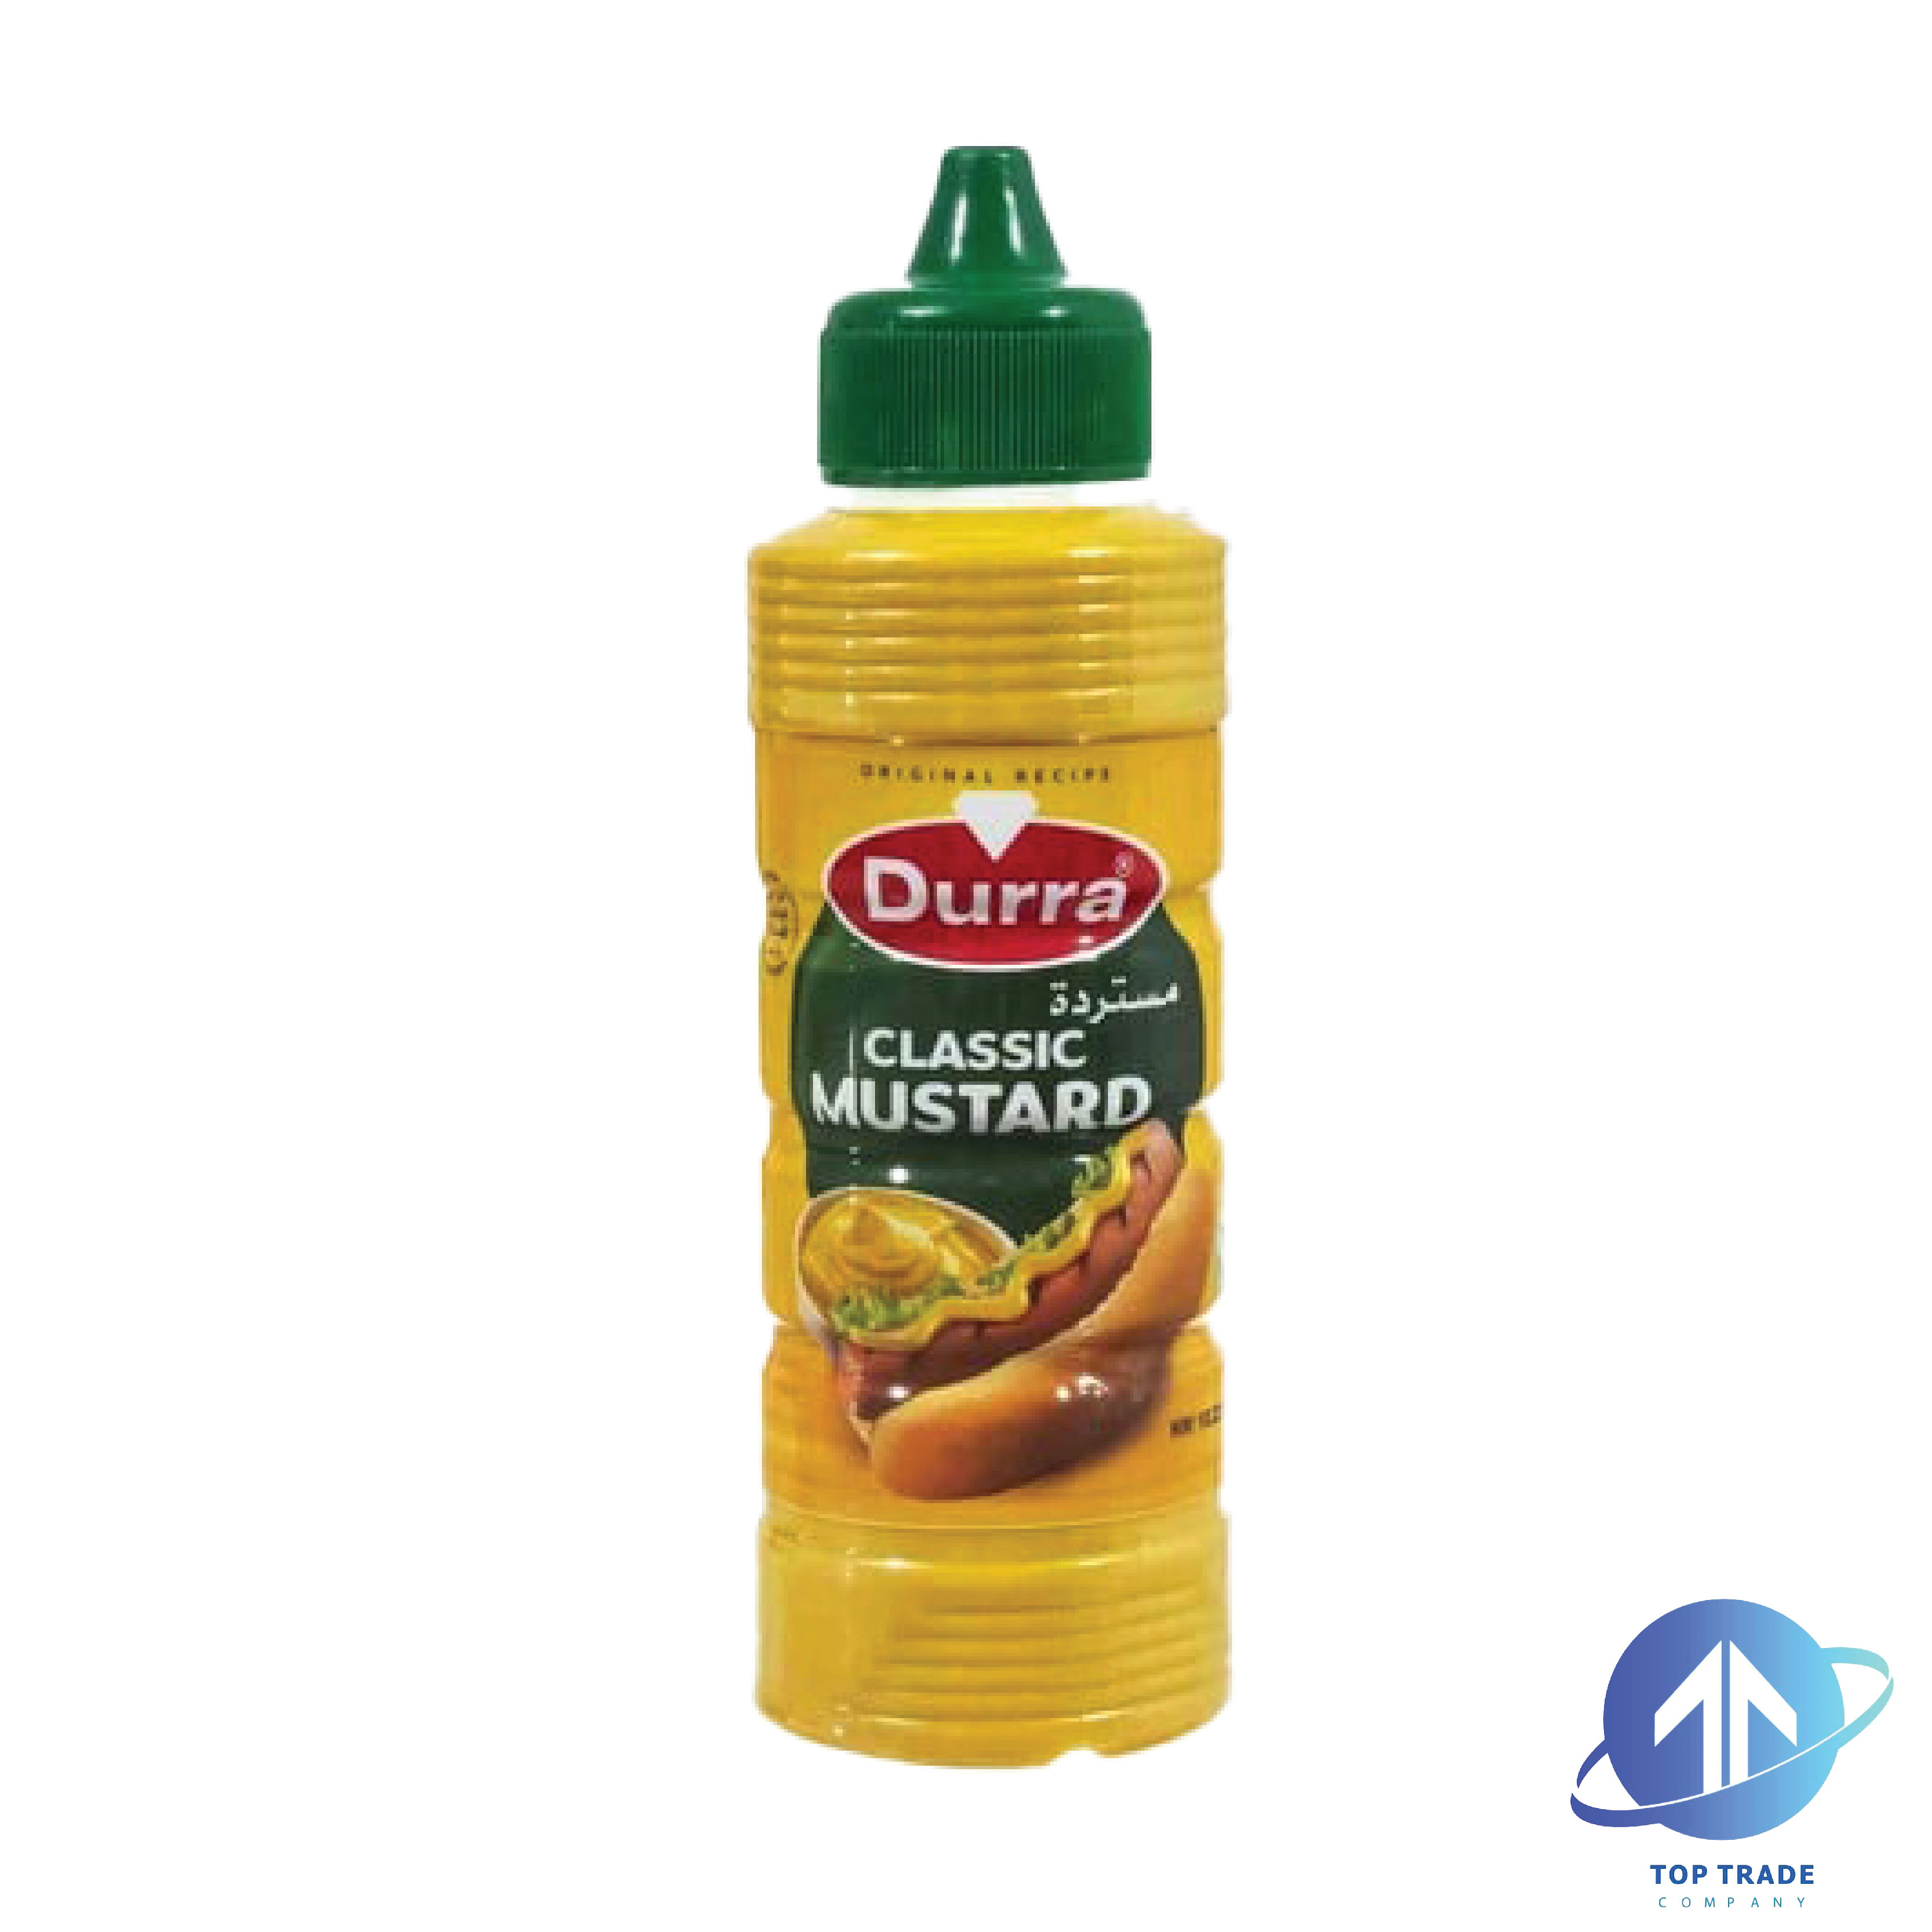 Durra Mustard 275gr